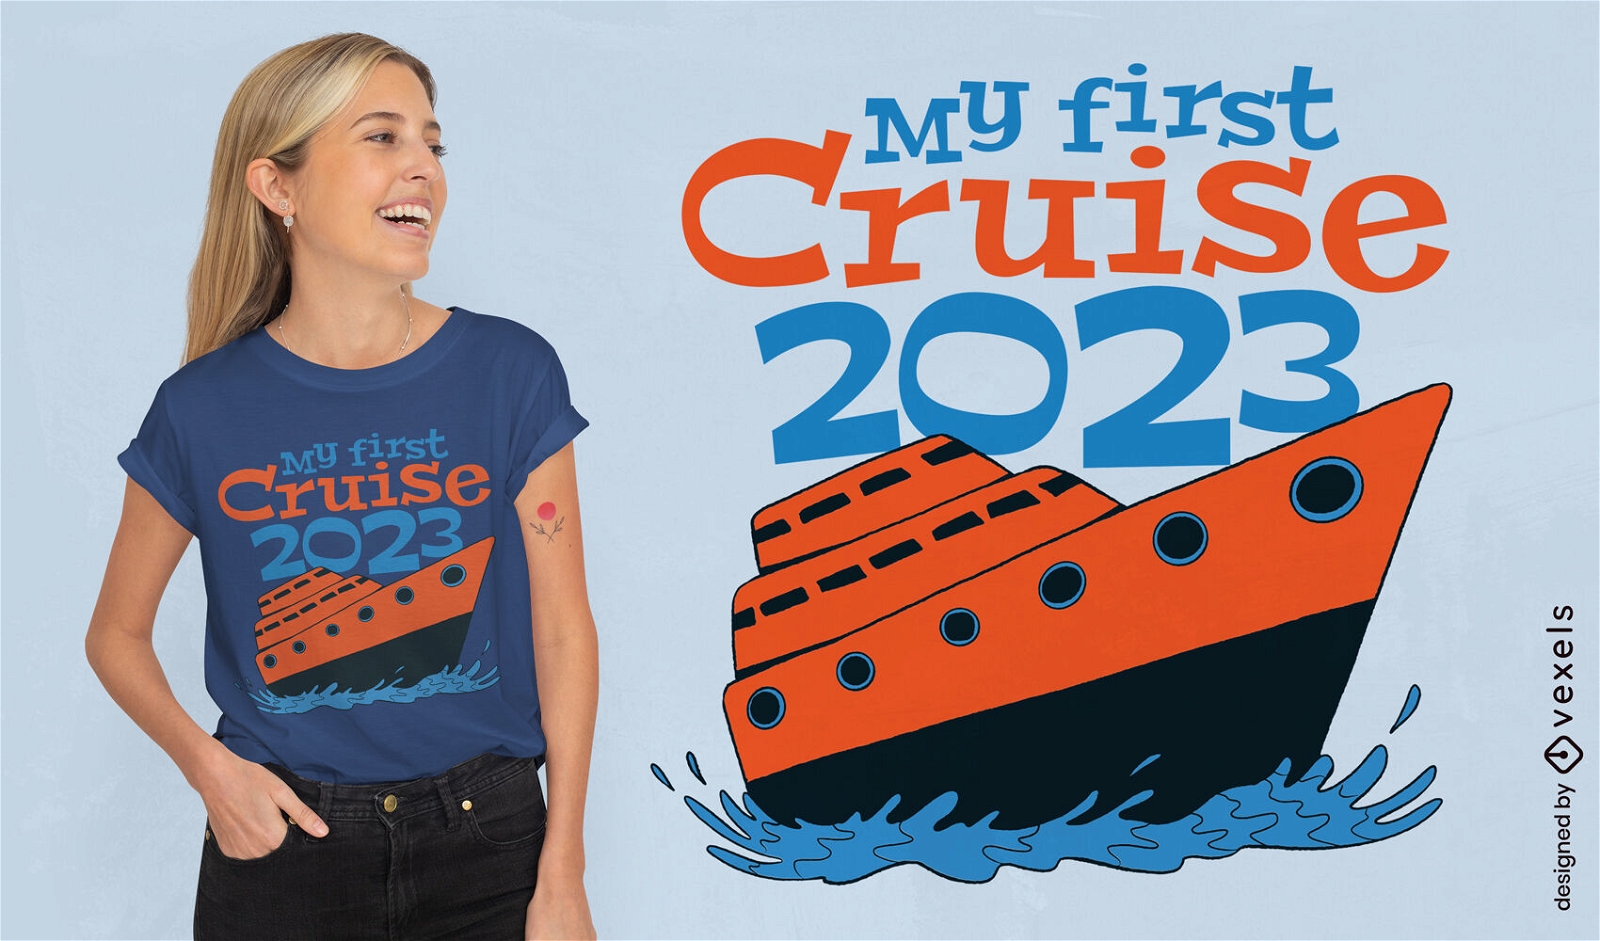 First cruise t-shirt design